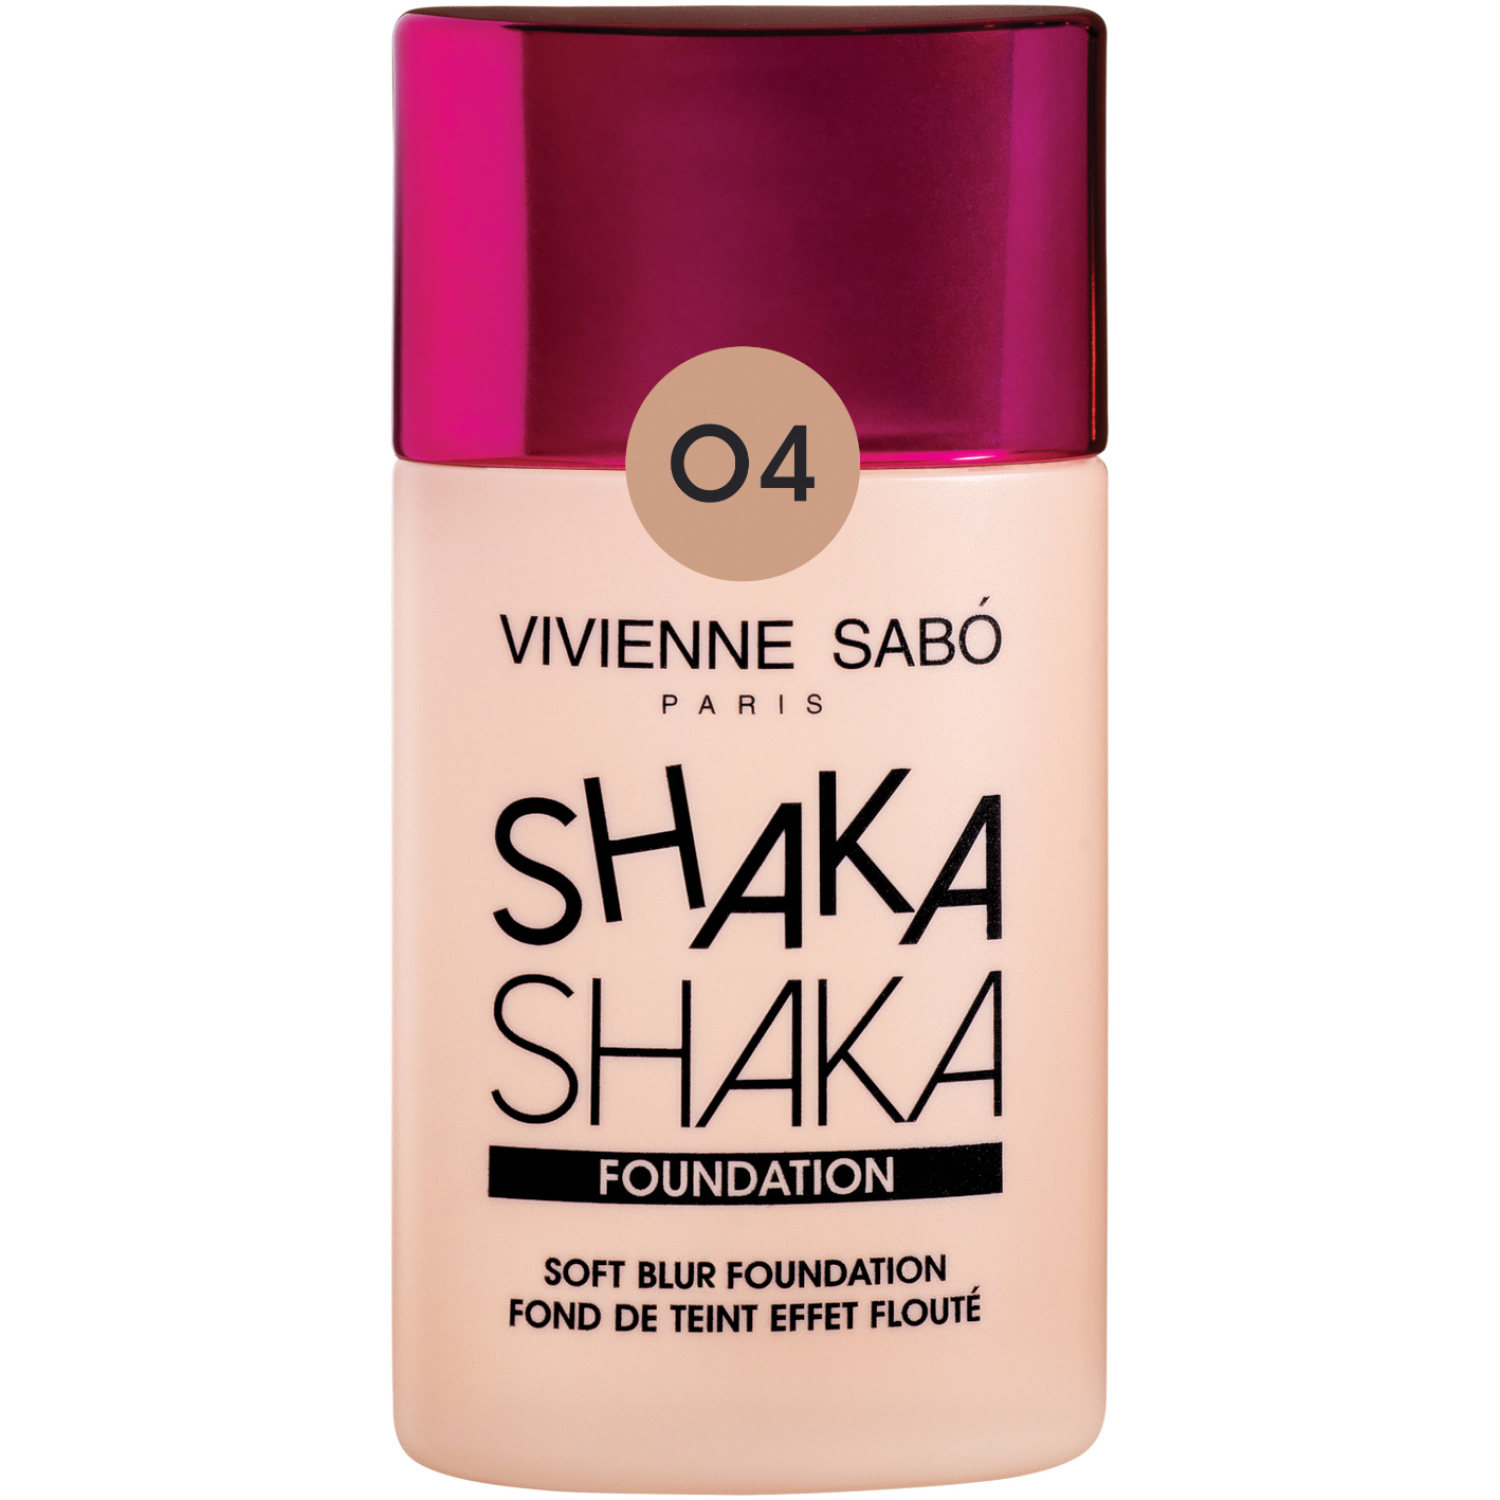 Тональный крем Vivienne Sabo Shaka Shaka, крем-флюид  с натуральным блюр-эффектом, тон 04, темно-бежевый, 25мл.